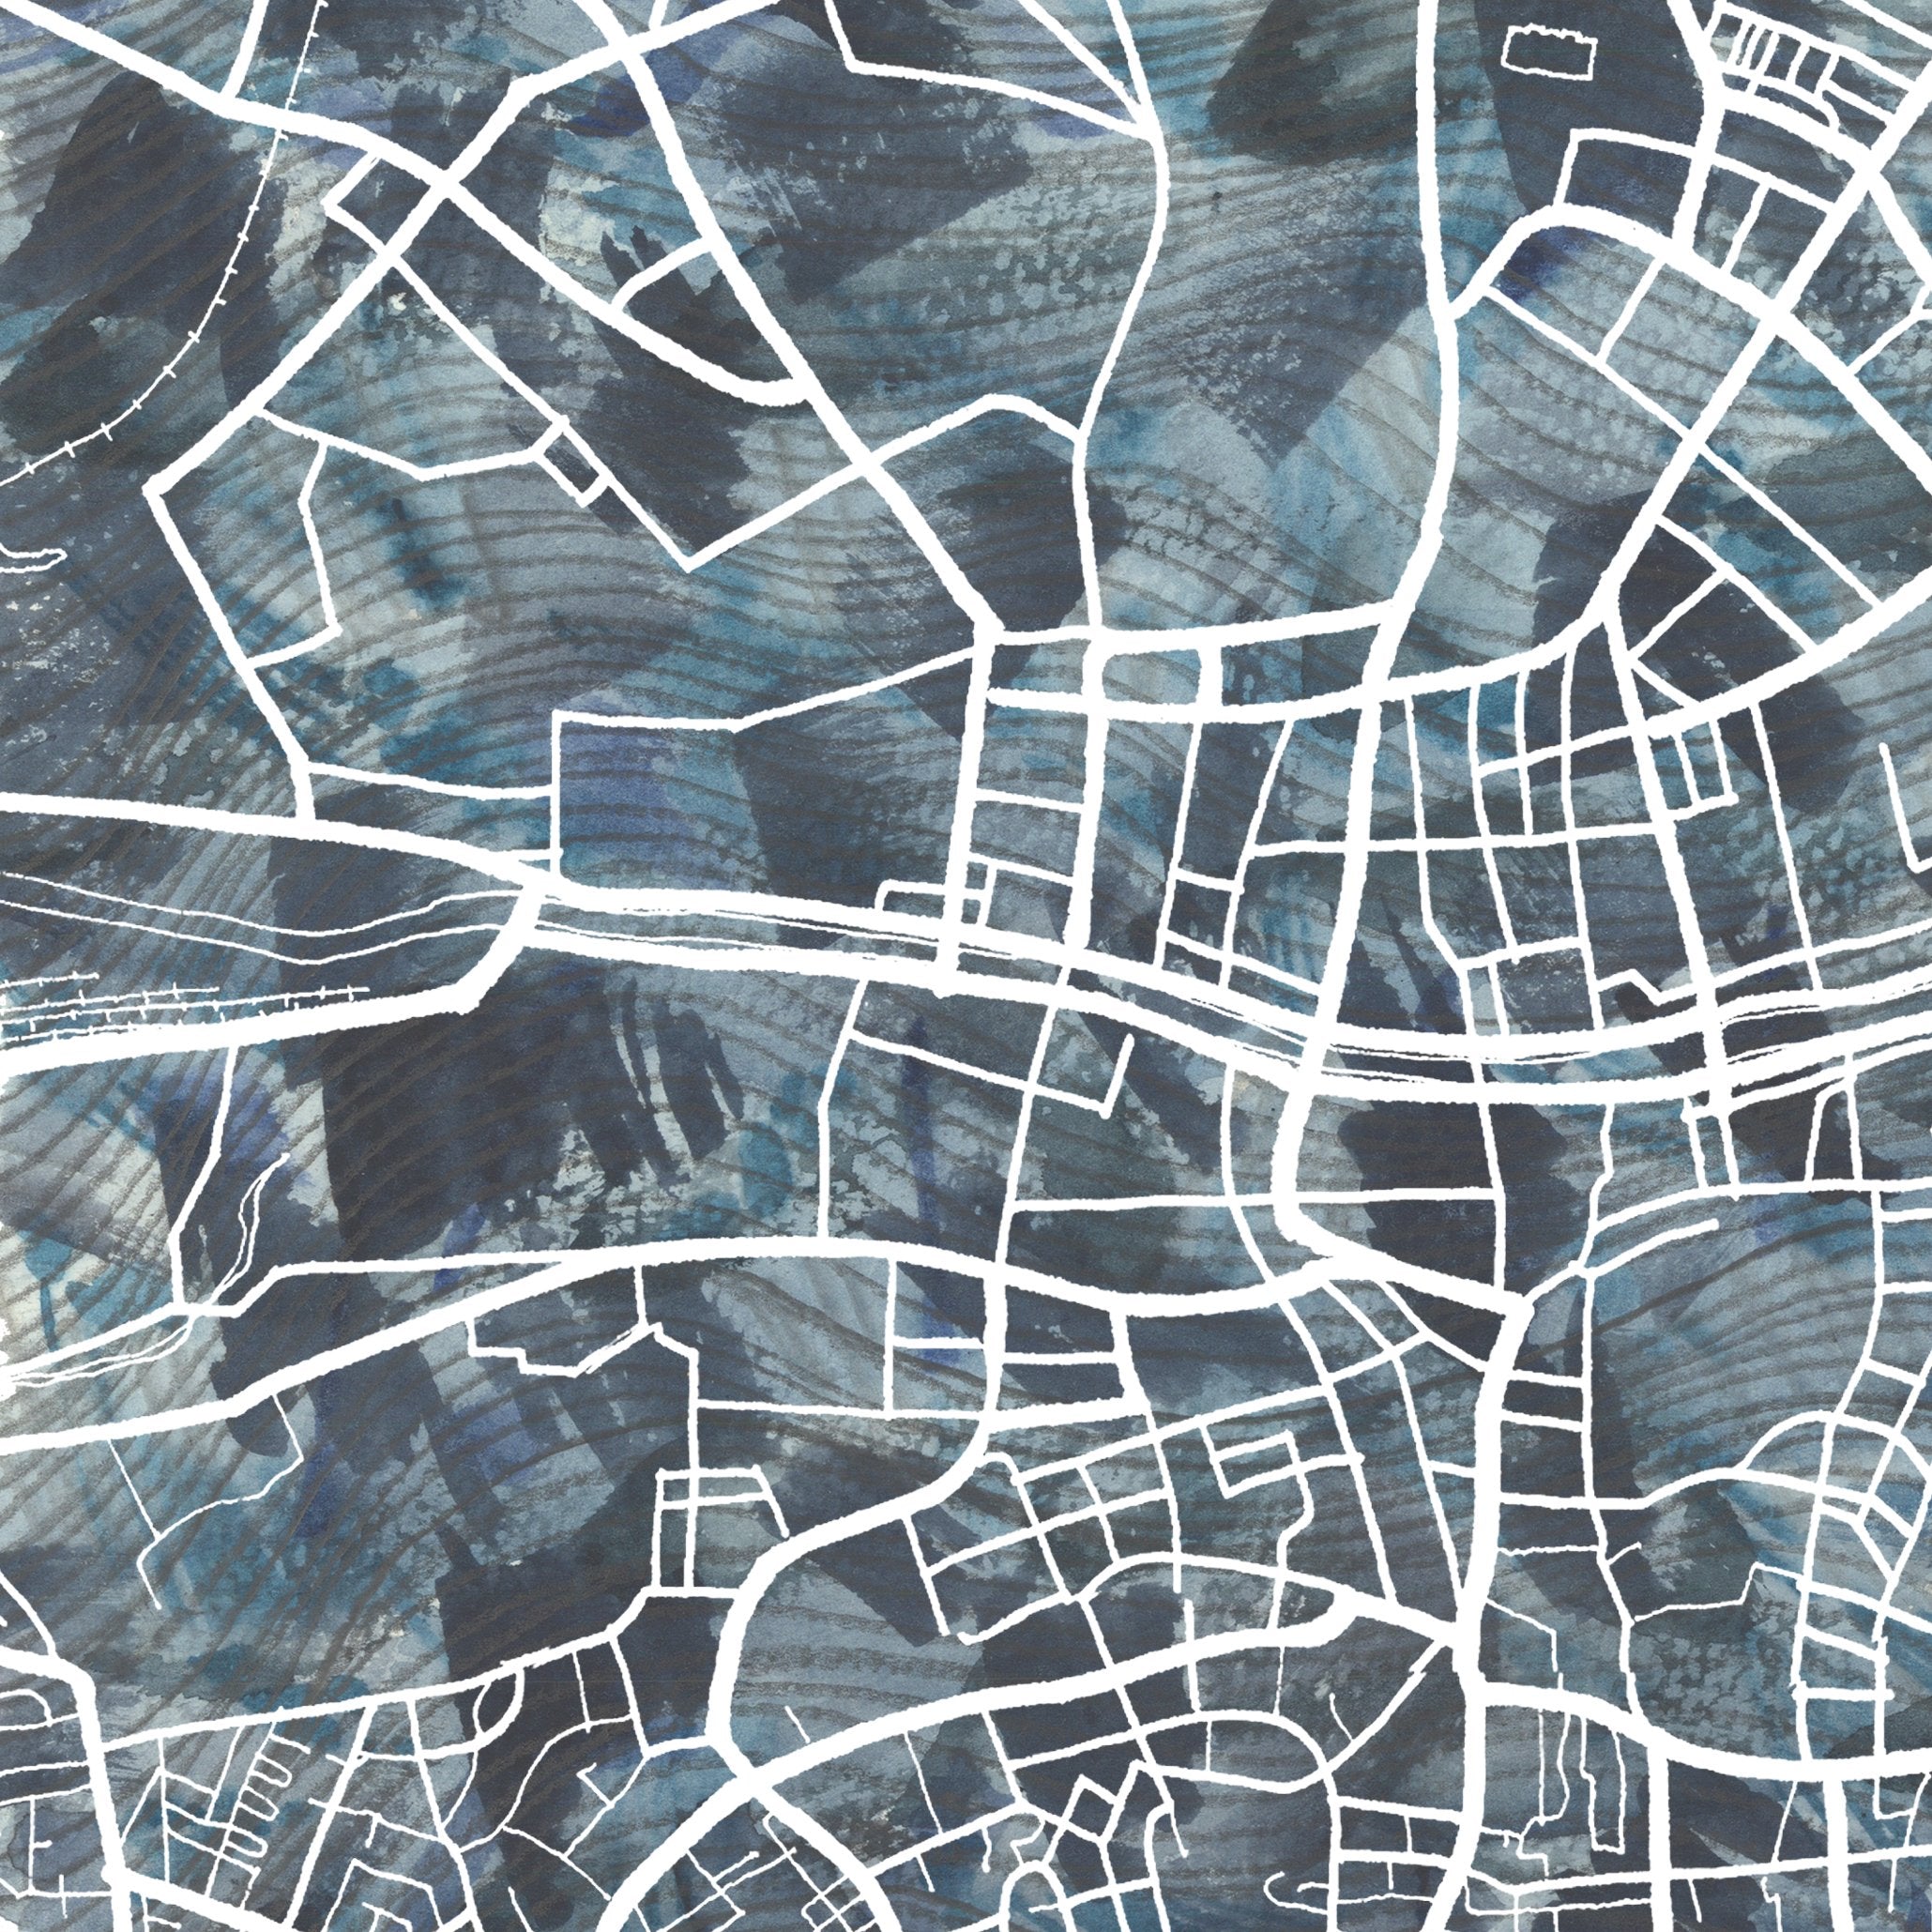 DUBLIN Urban Fabrics City Map: PRINT